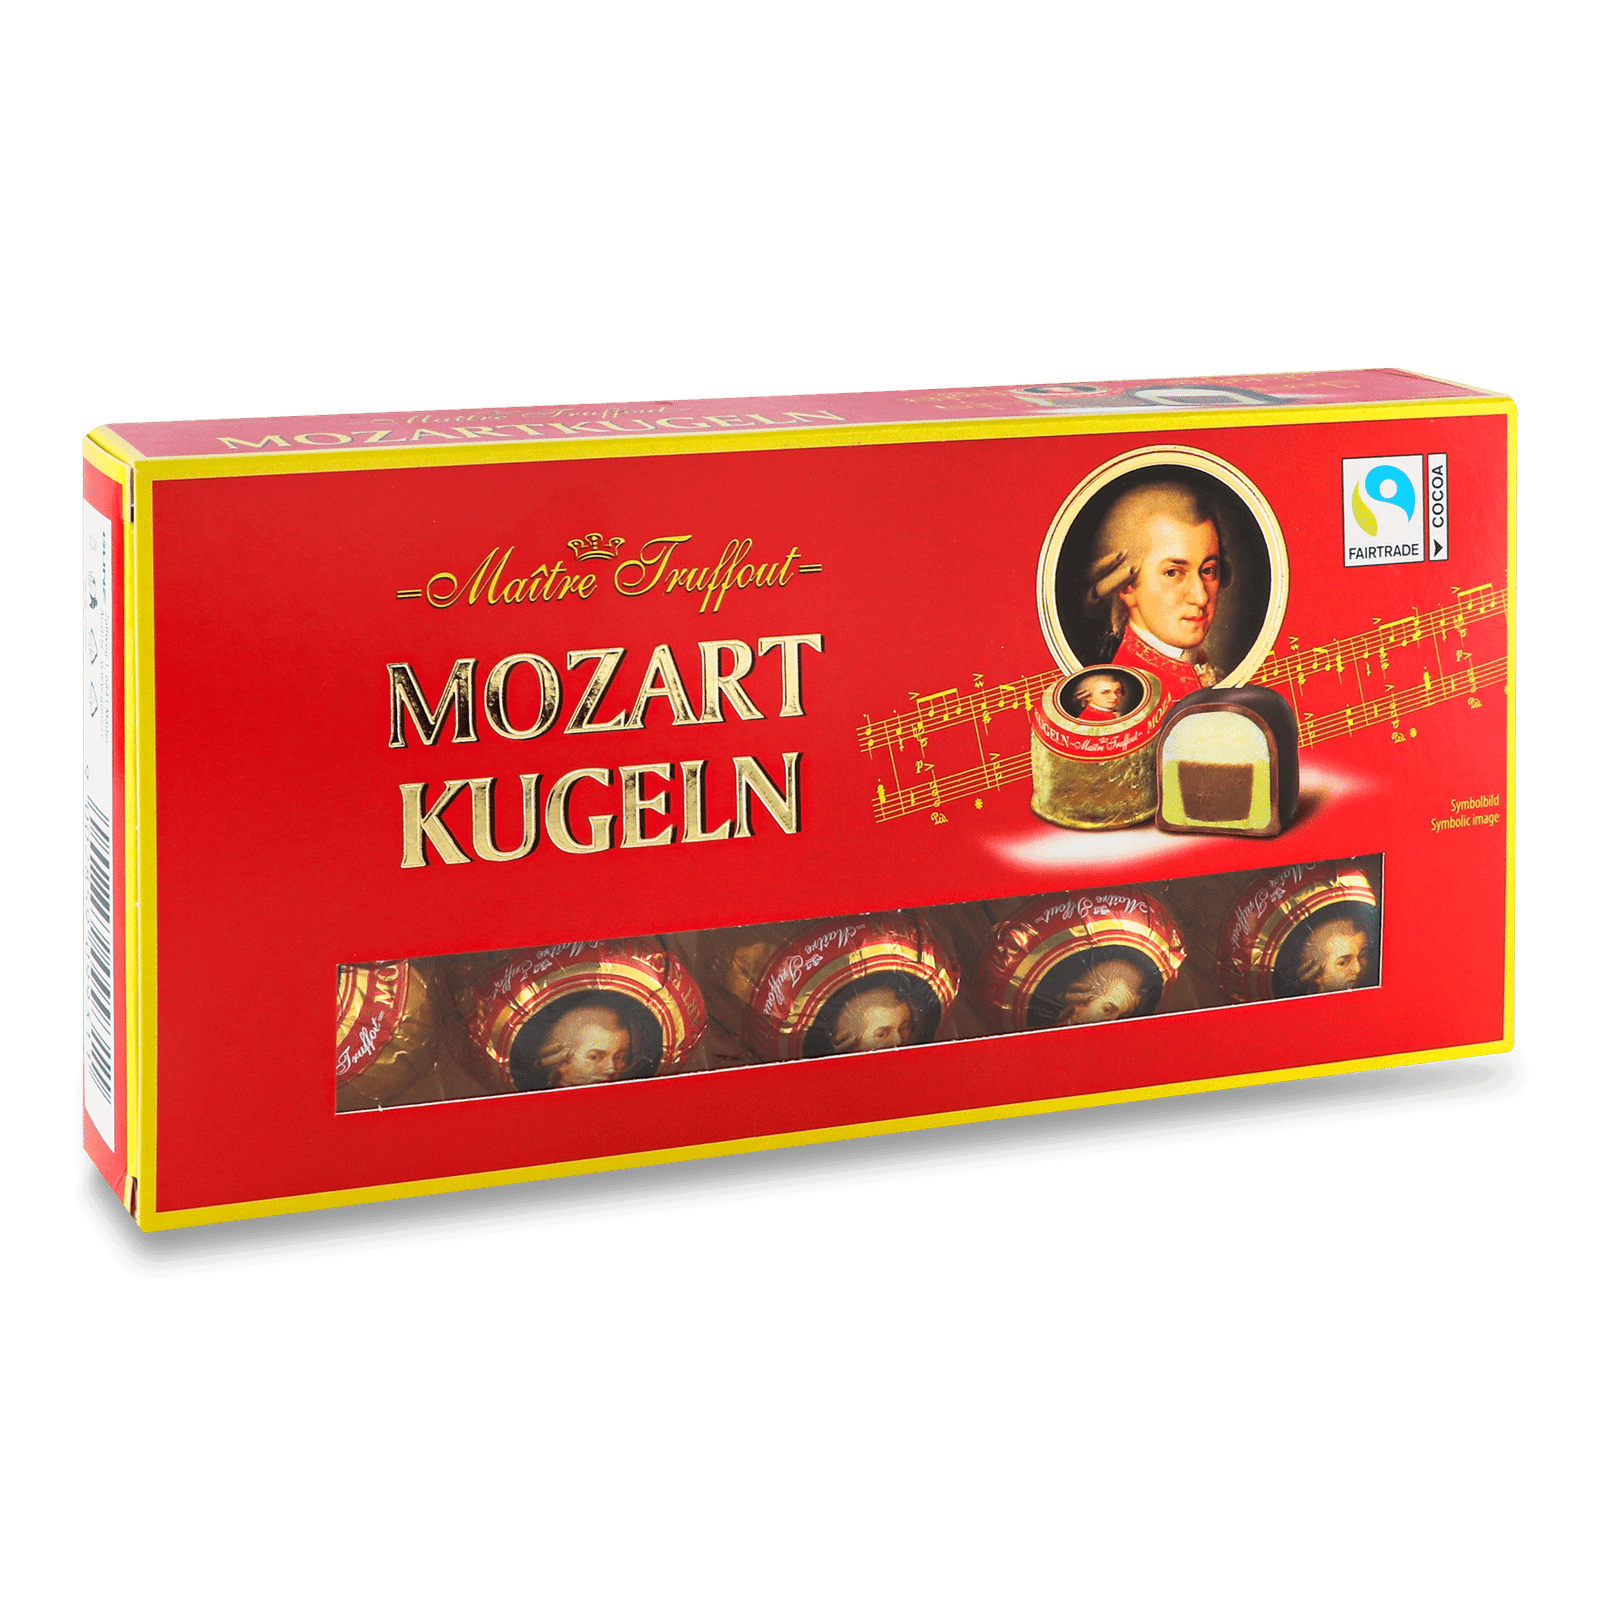 Цукерки Maitre Truffout Mozart Kugeln з марципаном - 1